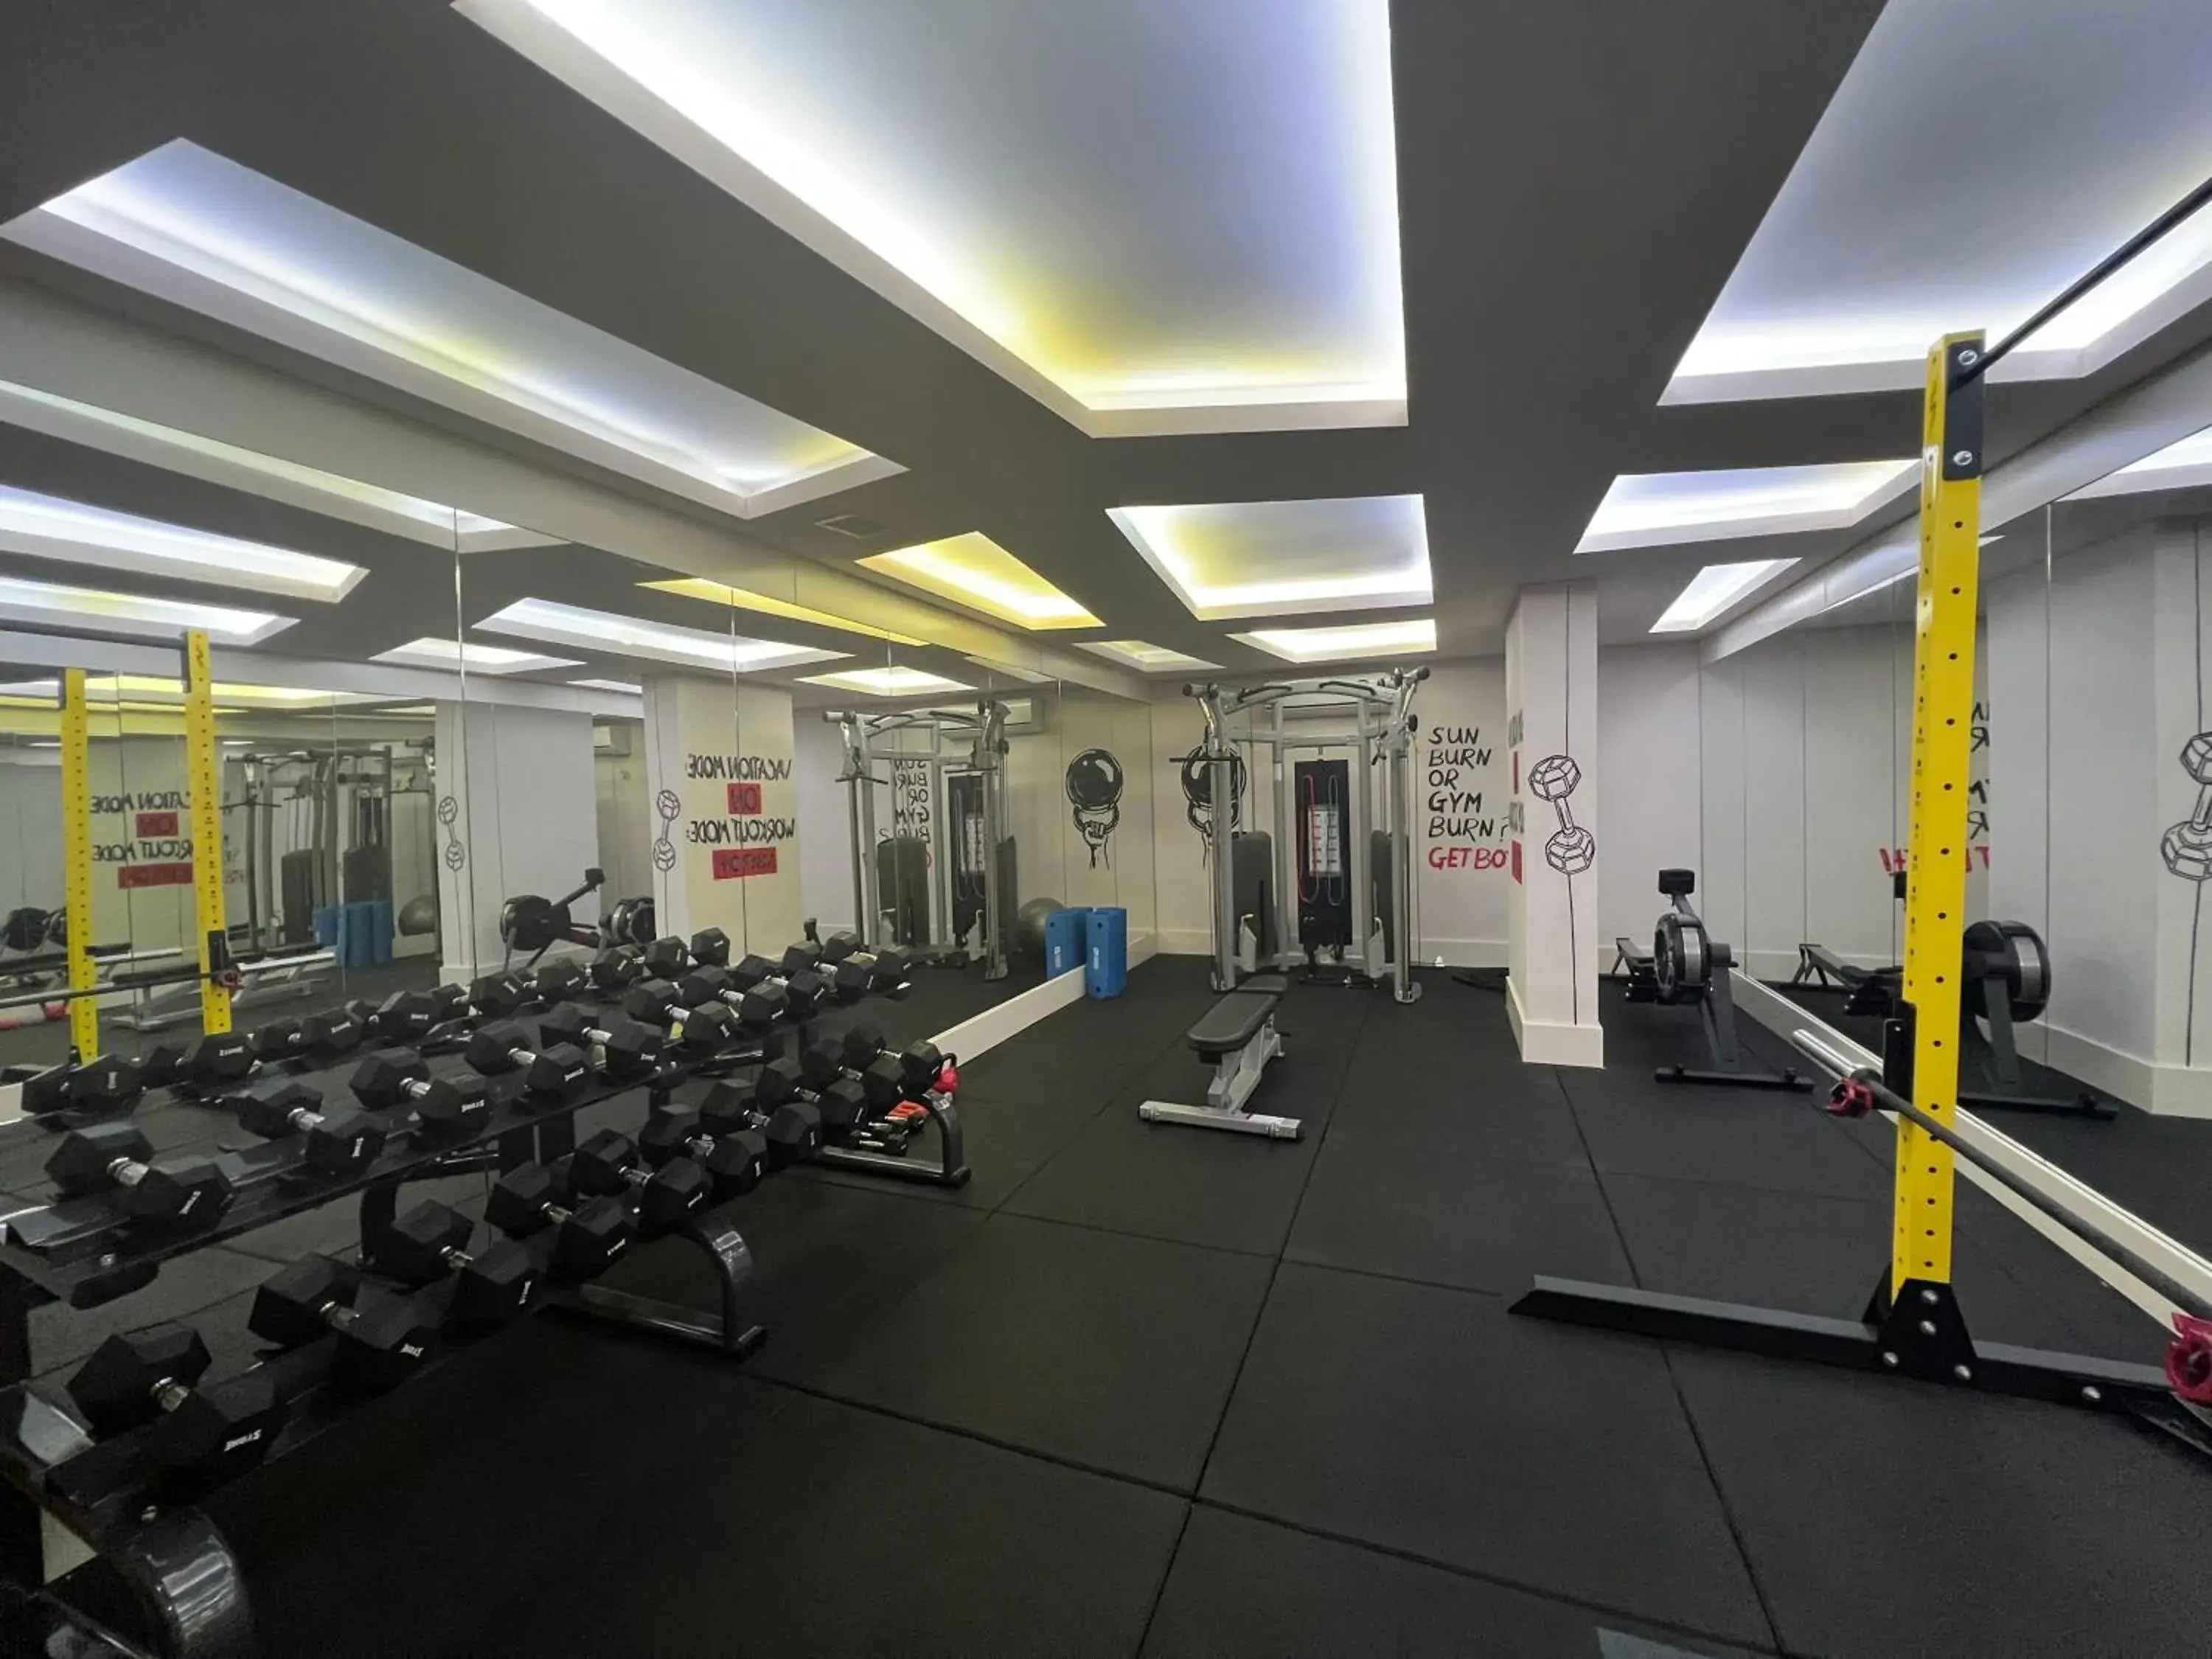 Fitness centre/facilities, Fitness Center/Facilities in Xperia Grand Bali Hotel - All Inclusive